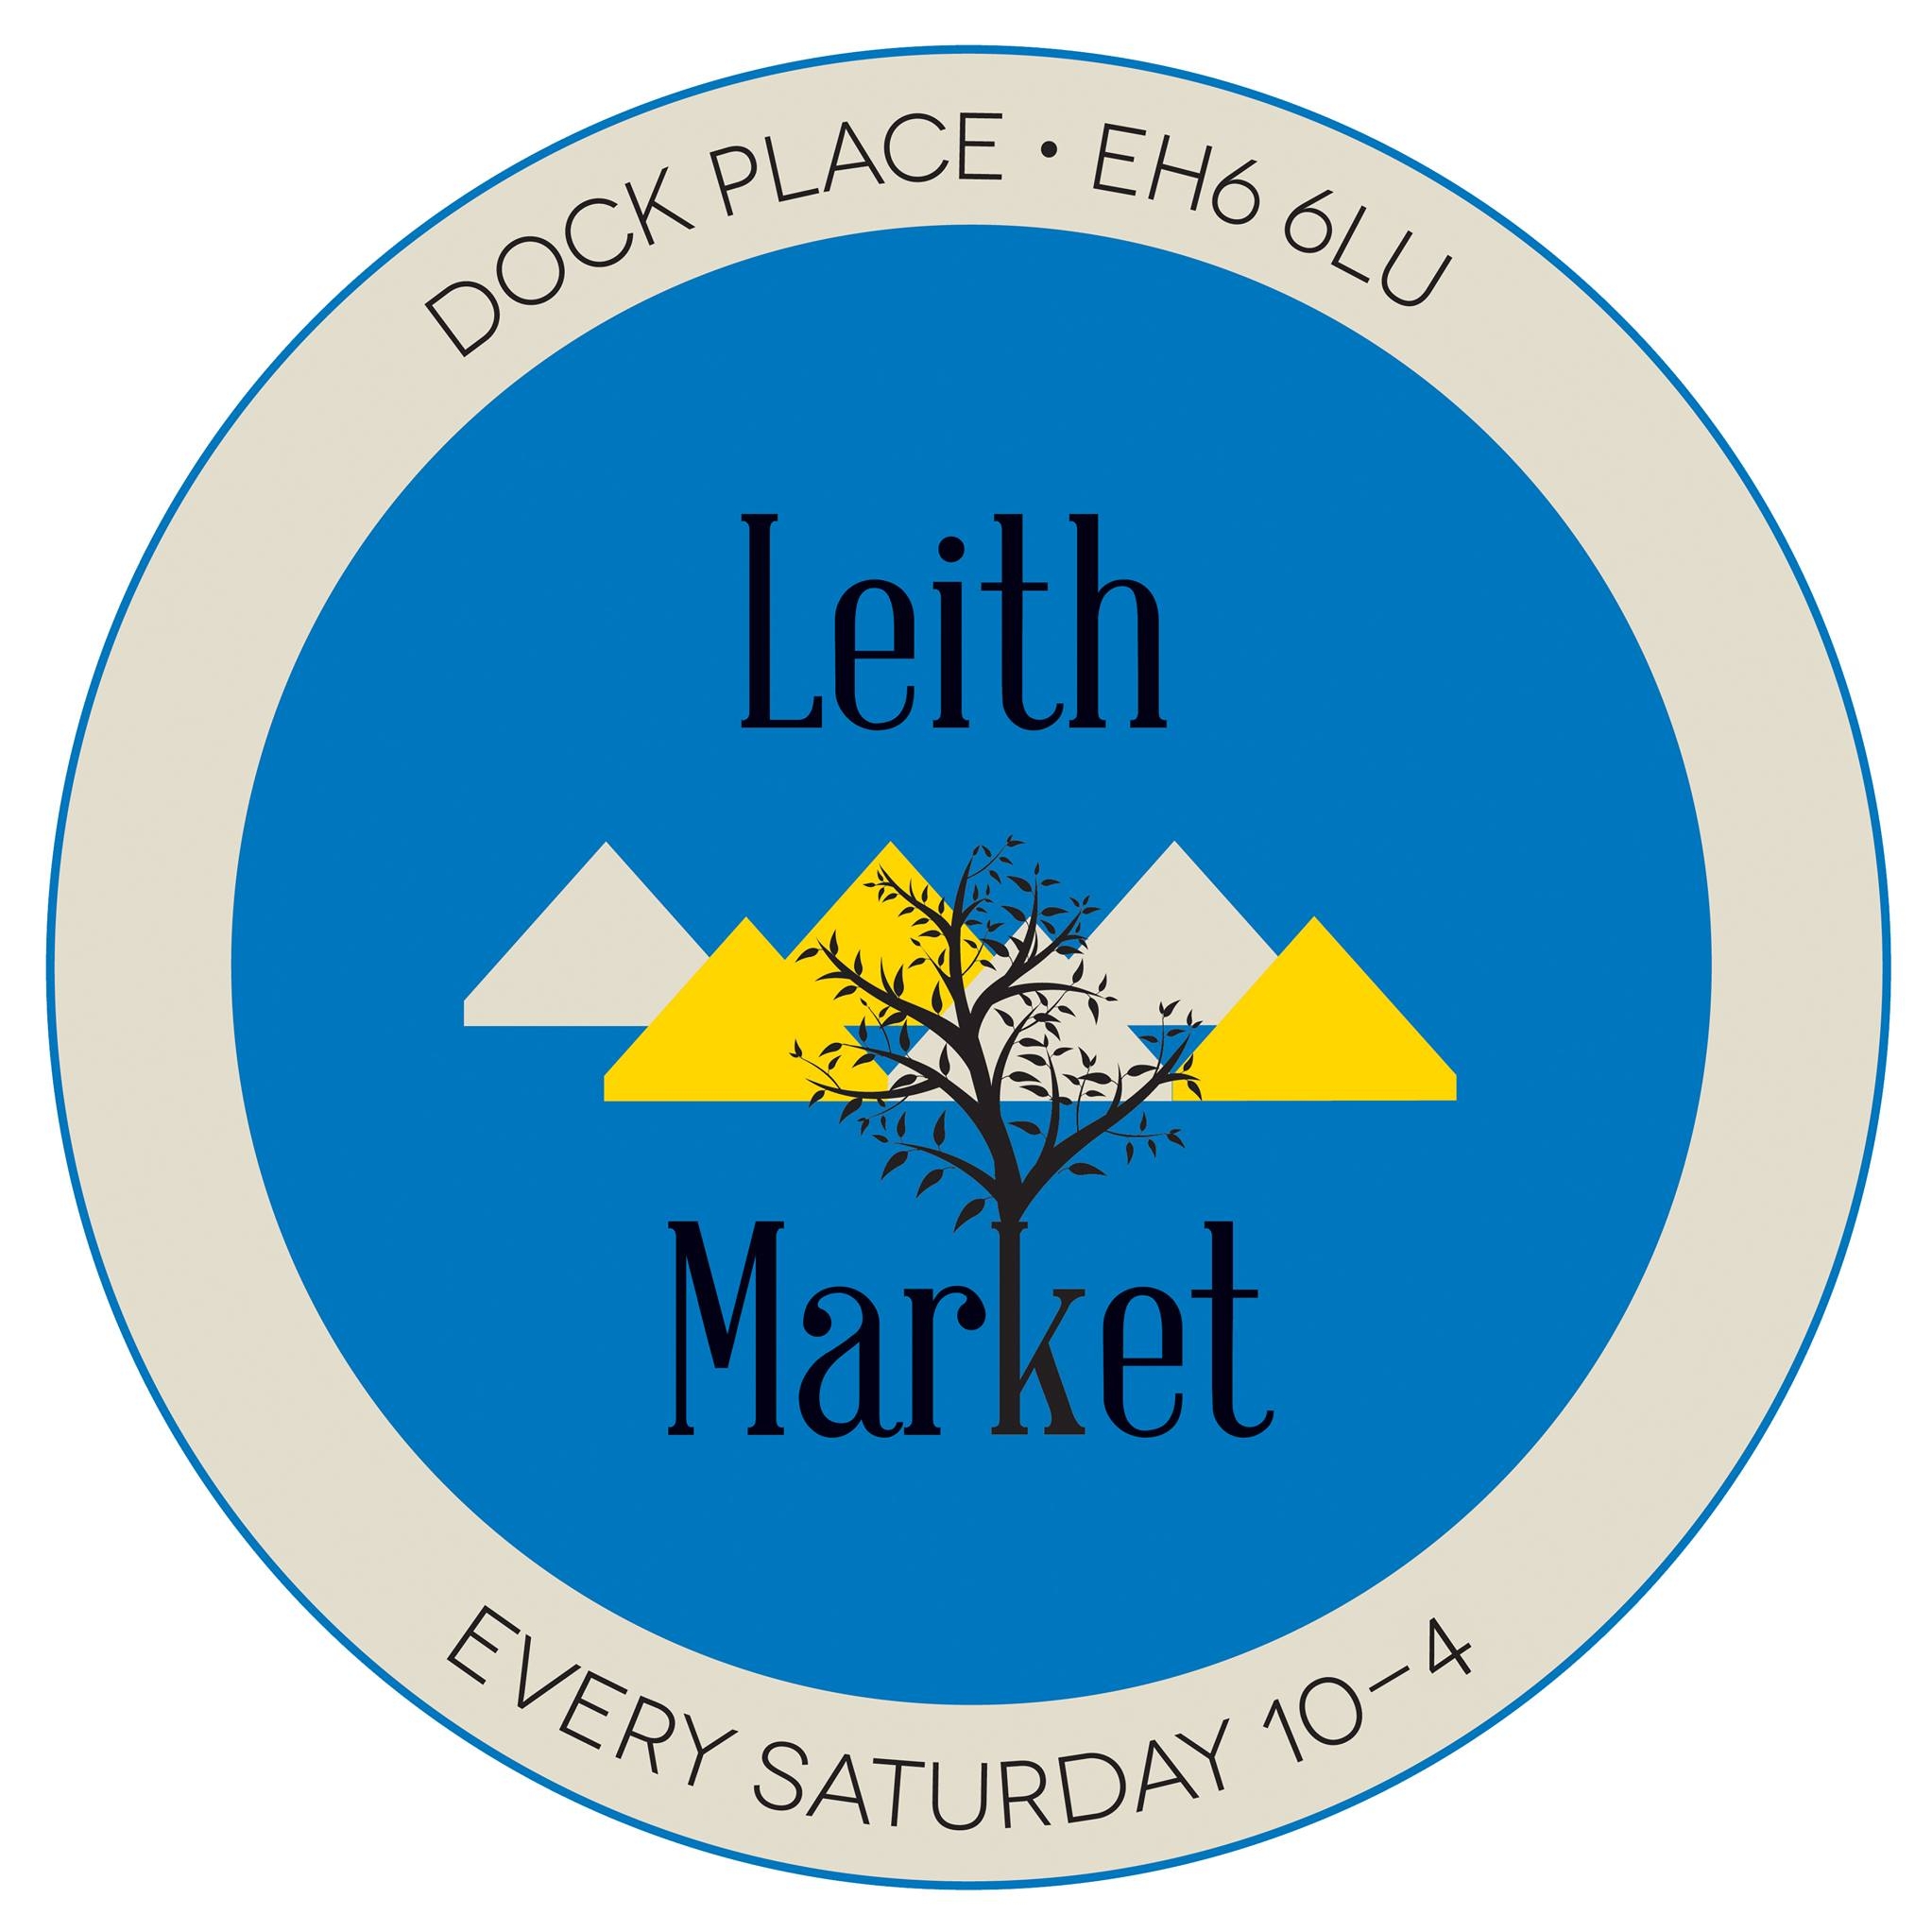 Leith Market